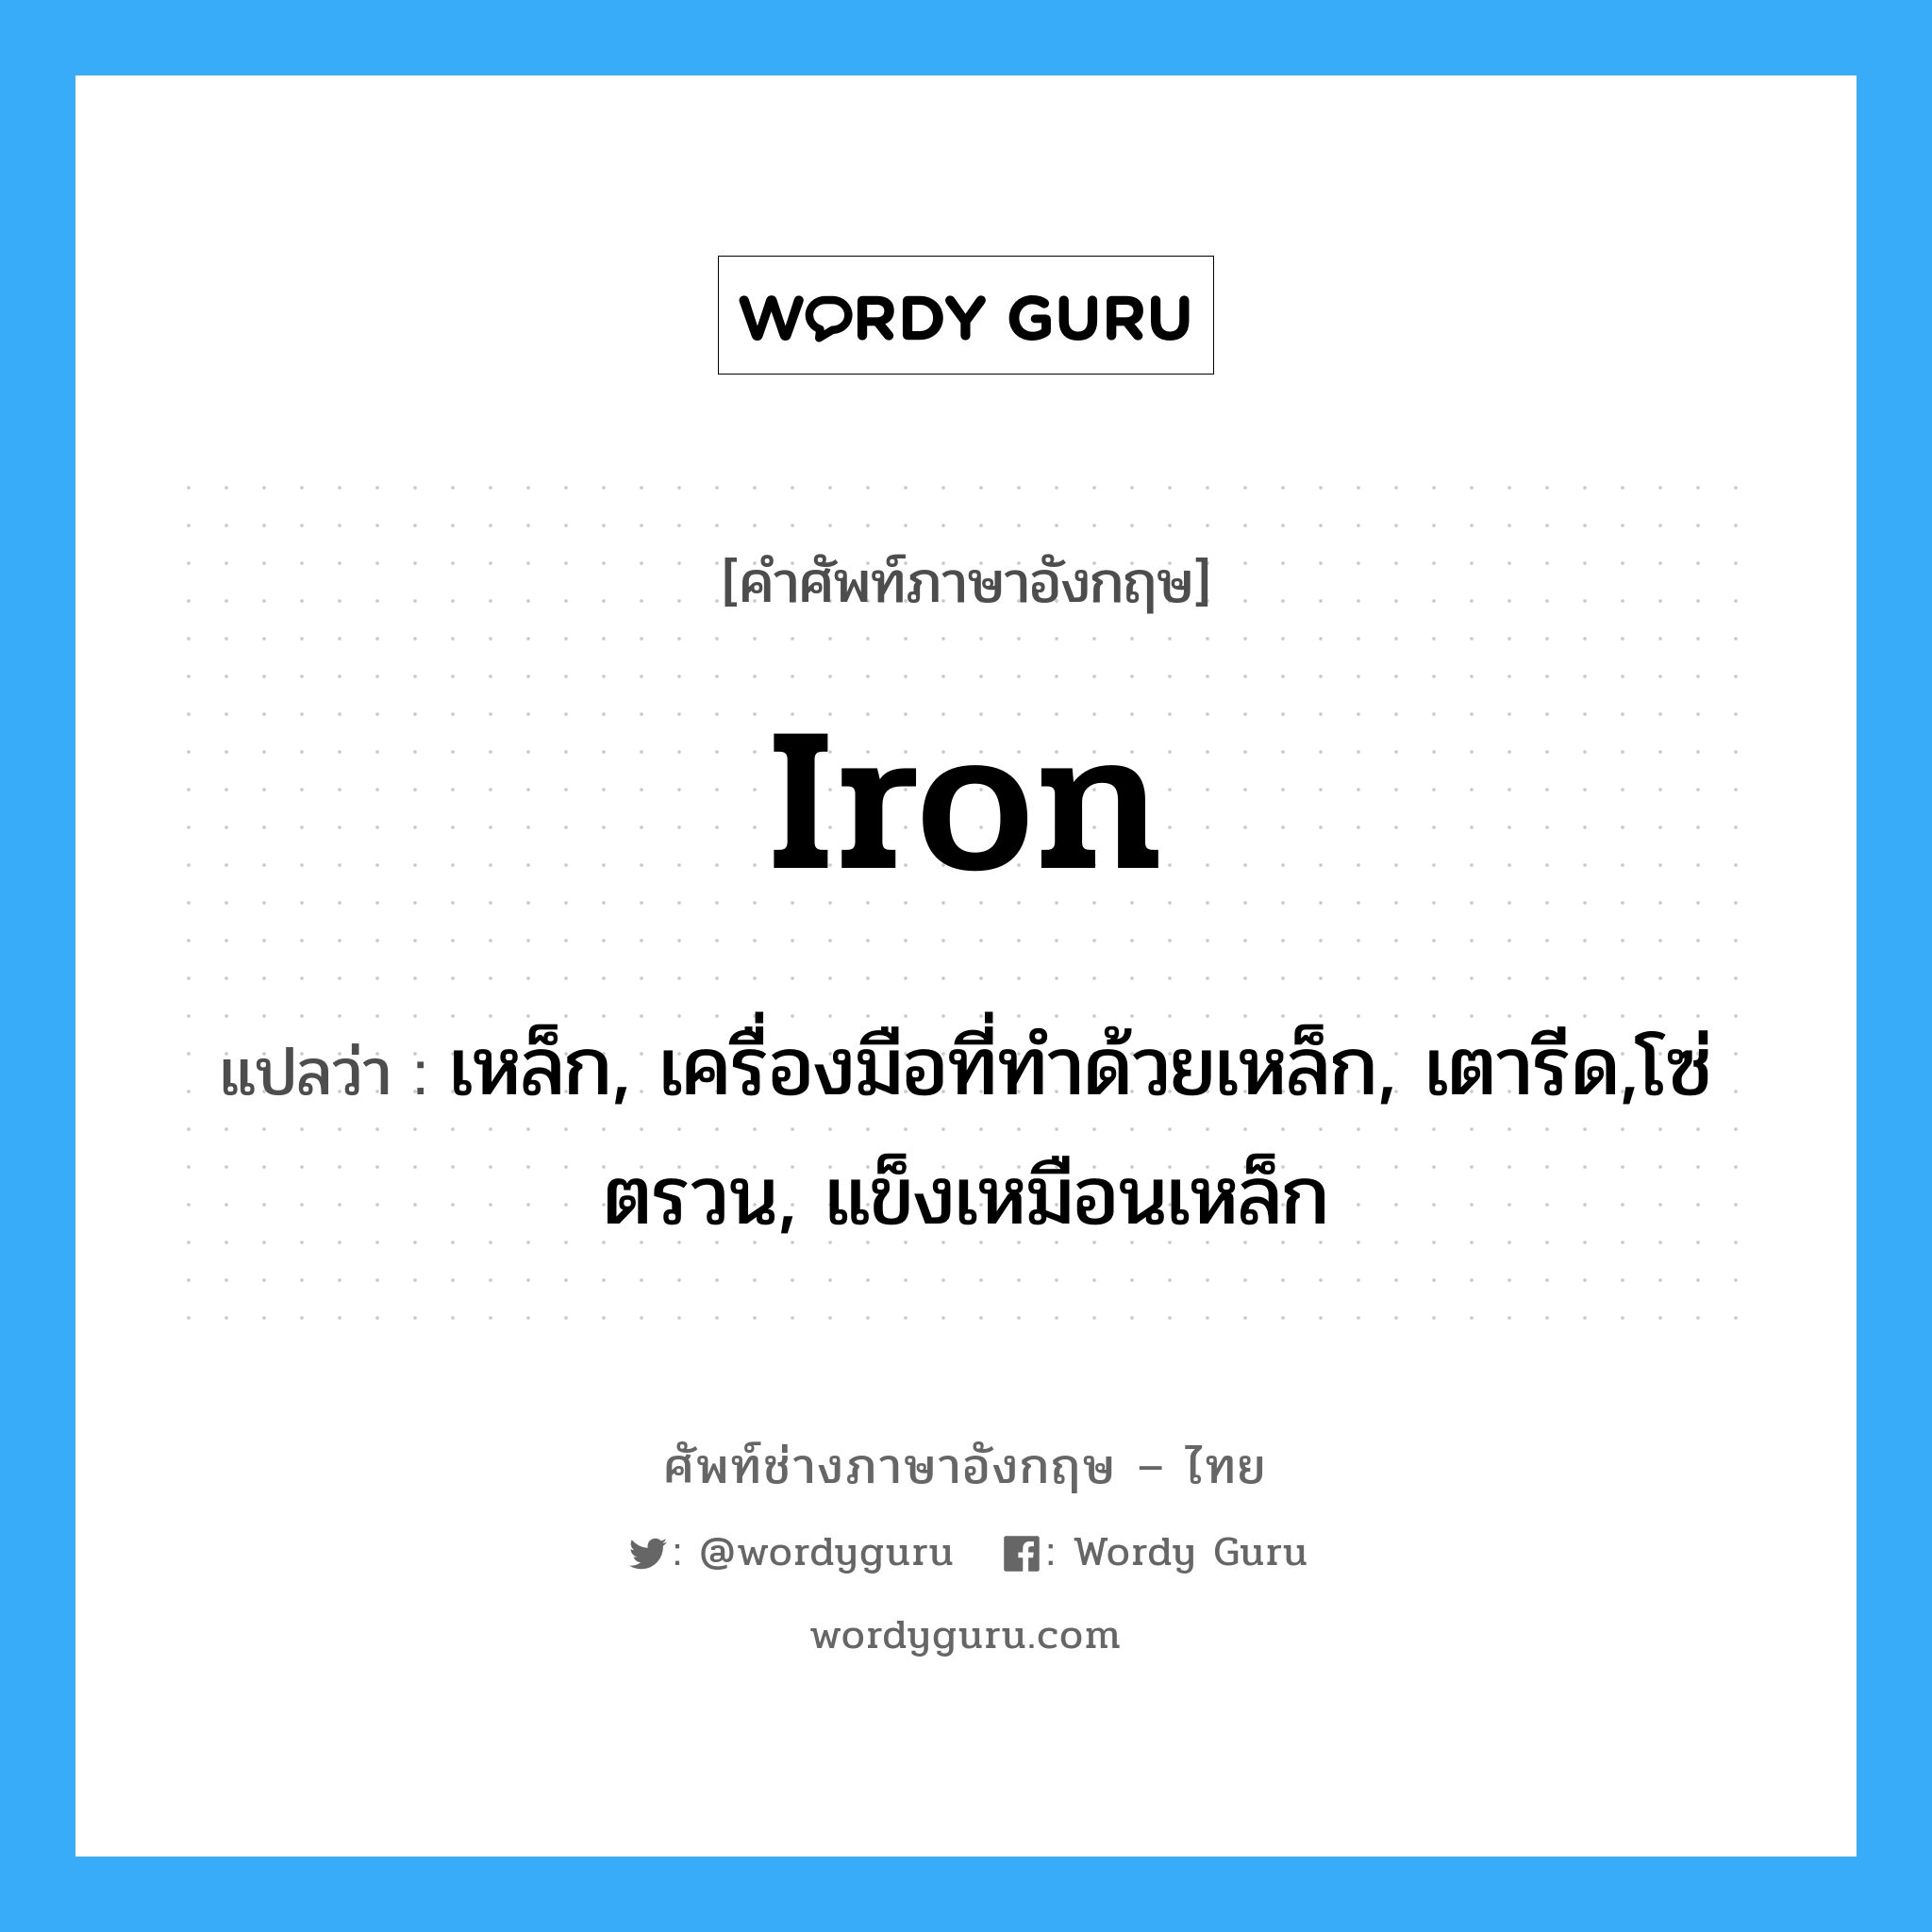 iron แปลว่า?, คำศัพท์ช่างภาษาอังกฤษ - ไทย iron คำศัพท์ภาษาอังกฤษ iron แปลว่า เหล็ก, เครื่องมือที่ทำด้วยเหล็ก, เตารีด,โซ่ตรวน, แข็งเหมือนเหล็ก